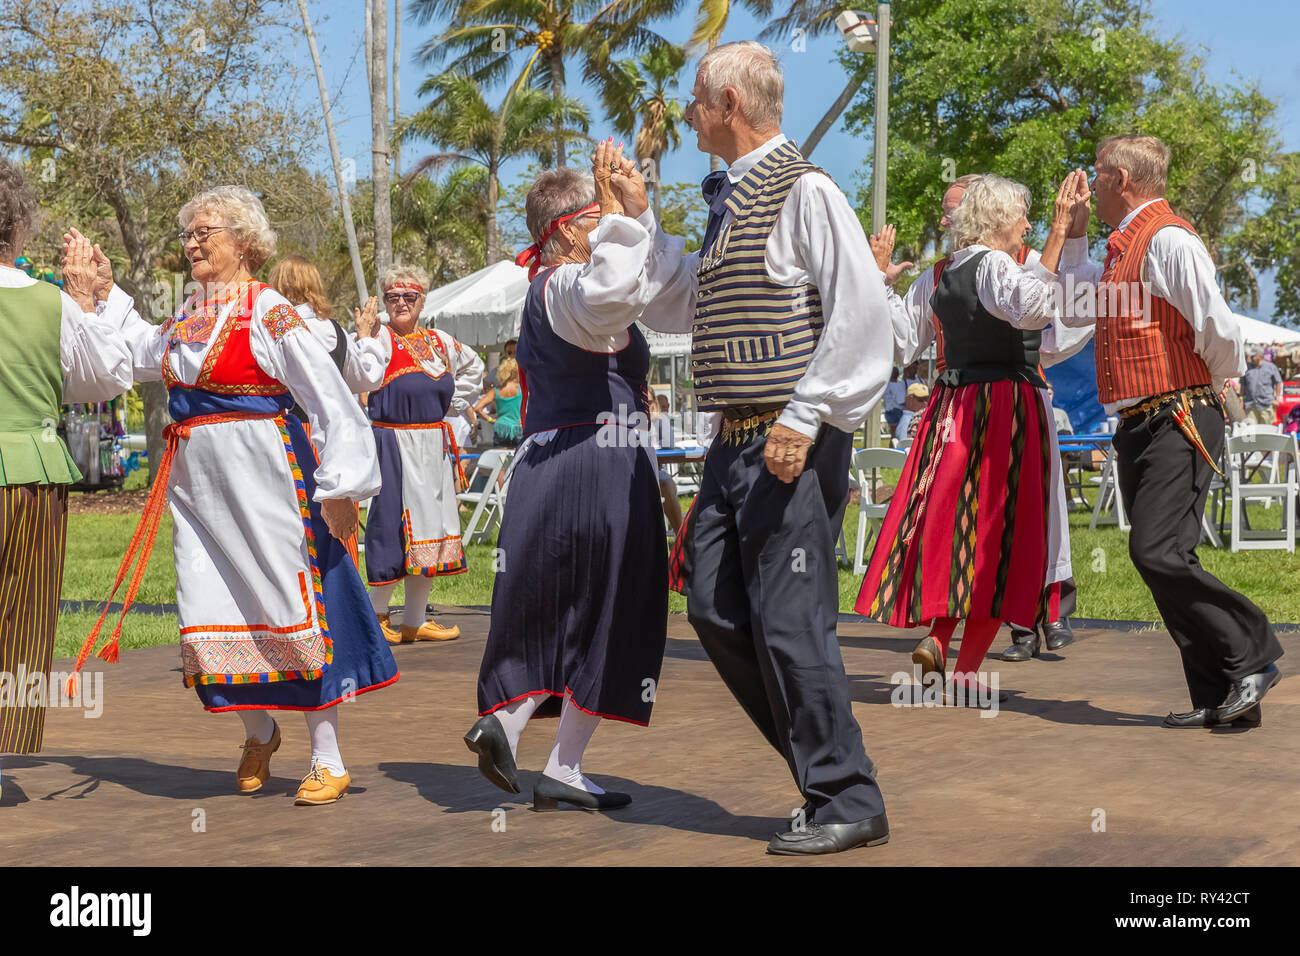 Lake Worth, FL, USA März 3, 2019, 24:00 Sun Festival finnische CultureThe Paare halten mit der rechten Hand der anderen Partner, da sie Wirbeln. Stockfoto